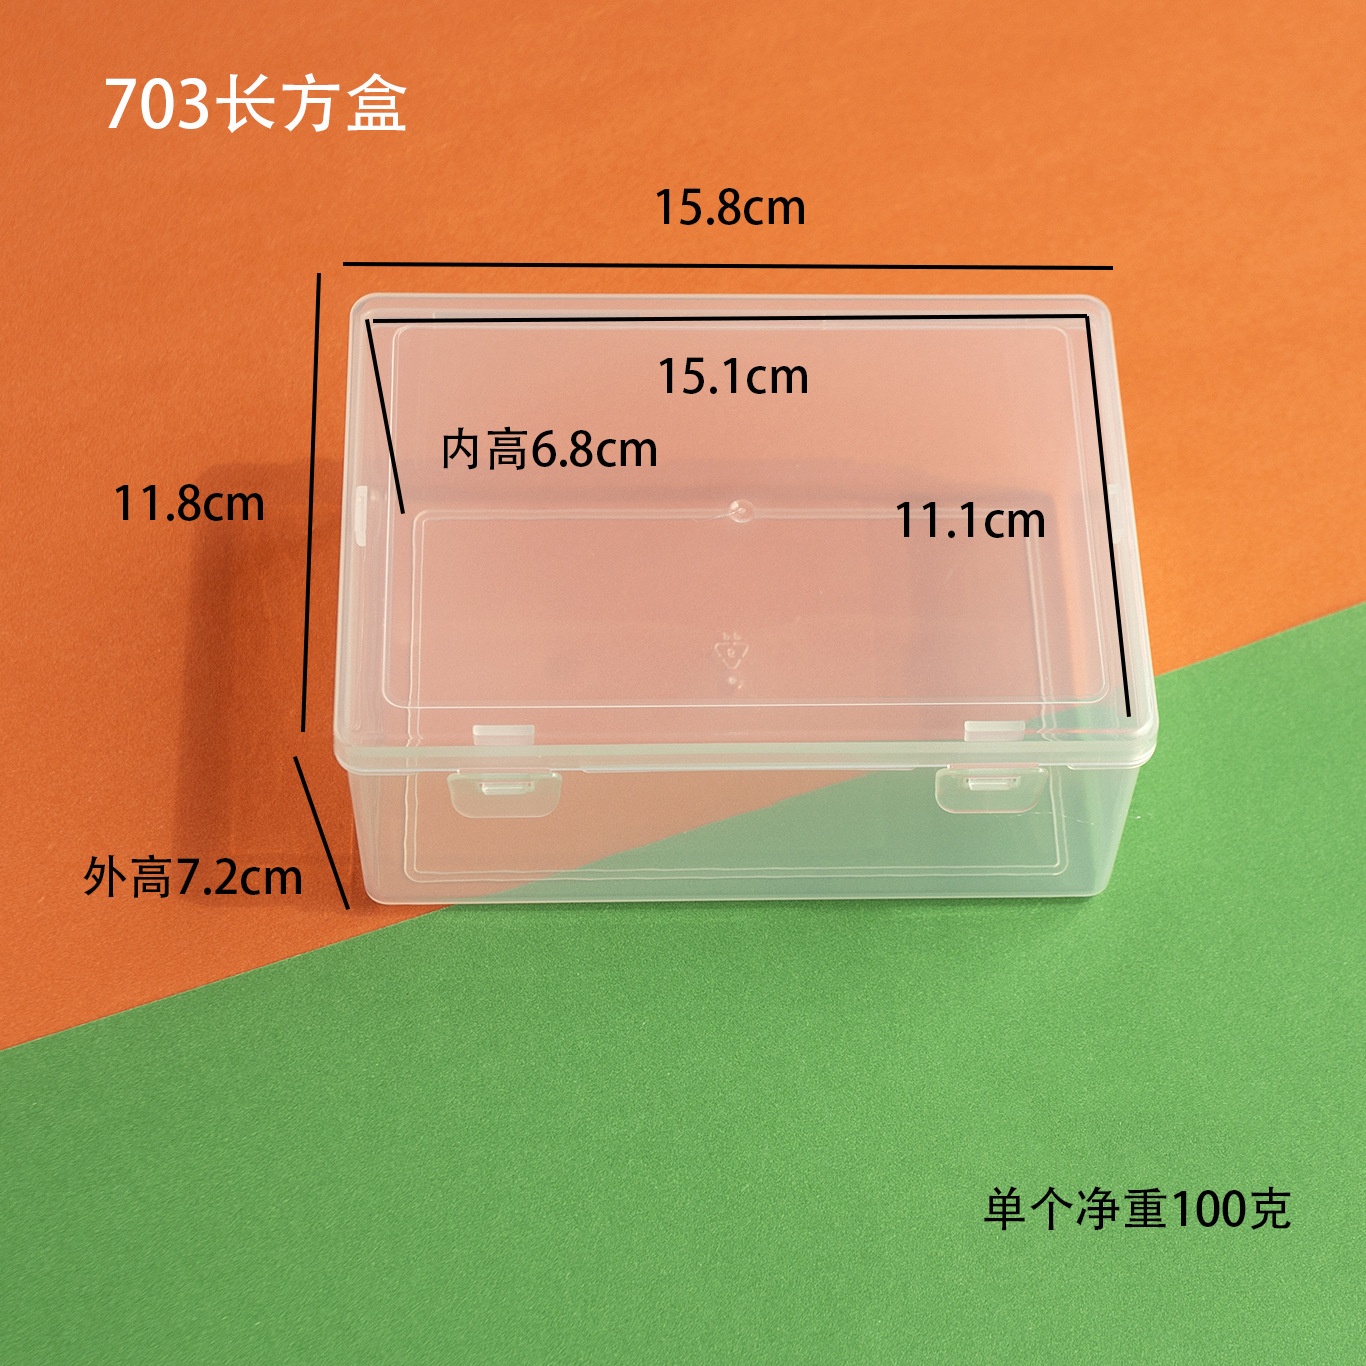 长方形渔具透明塑料包装盒饰品配件元件工具收纳空盒翻盖储物盒子